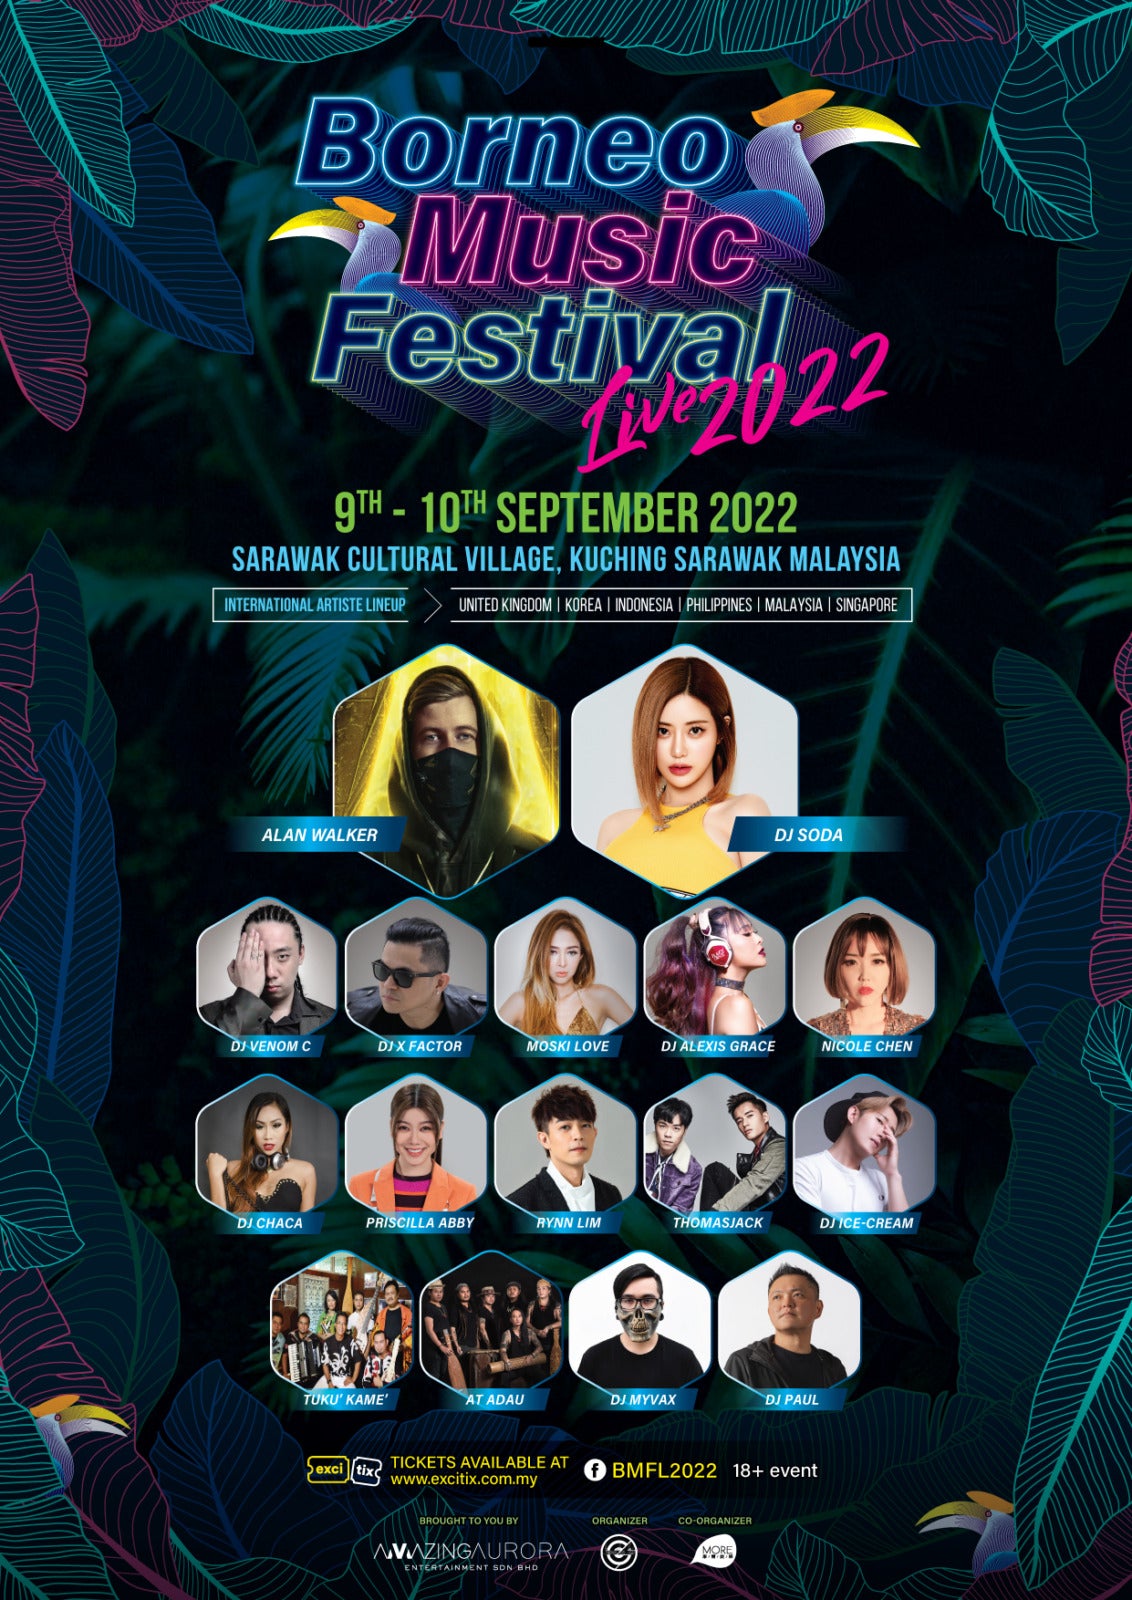 Borneo Music Festival Live 2022 Image